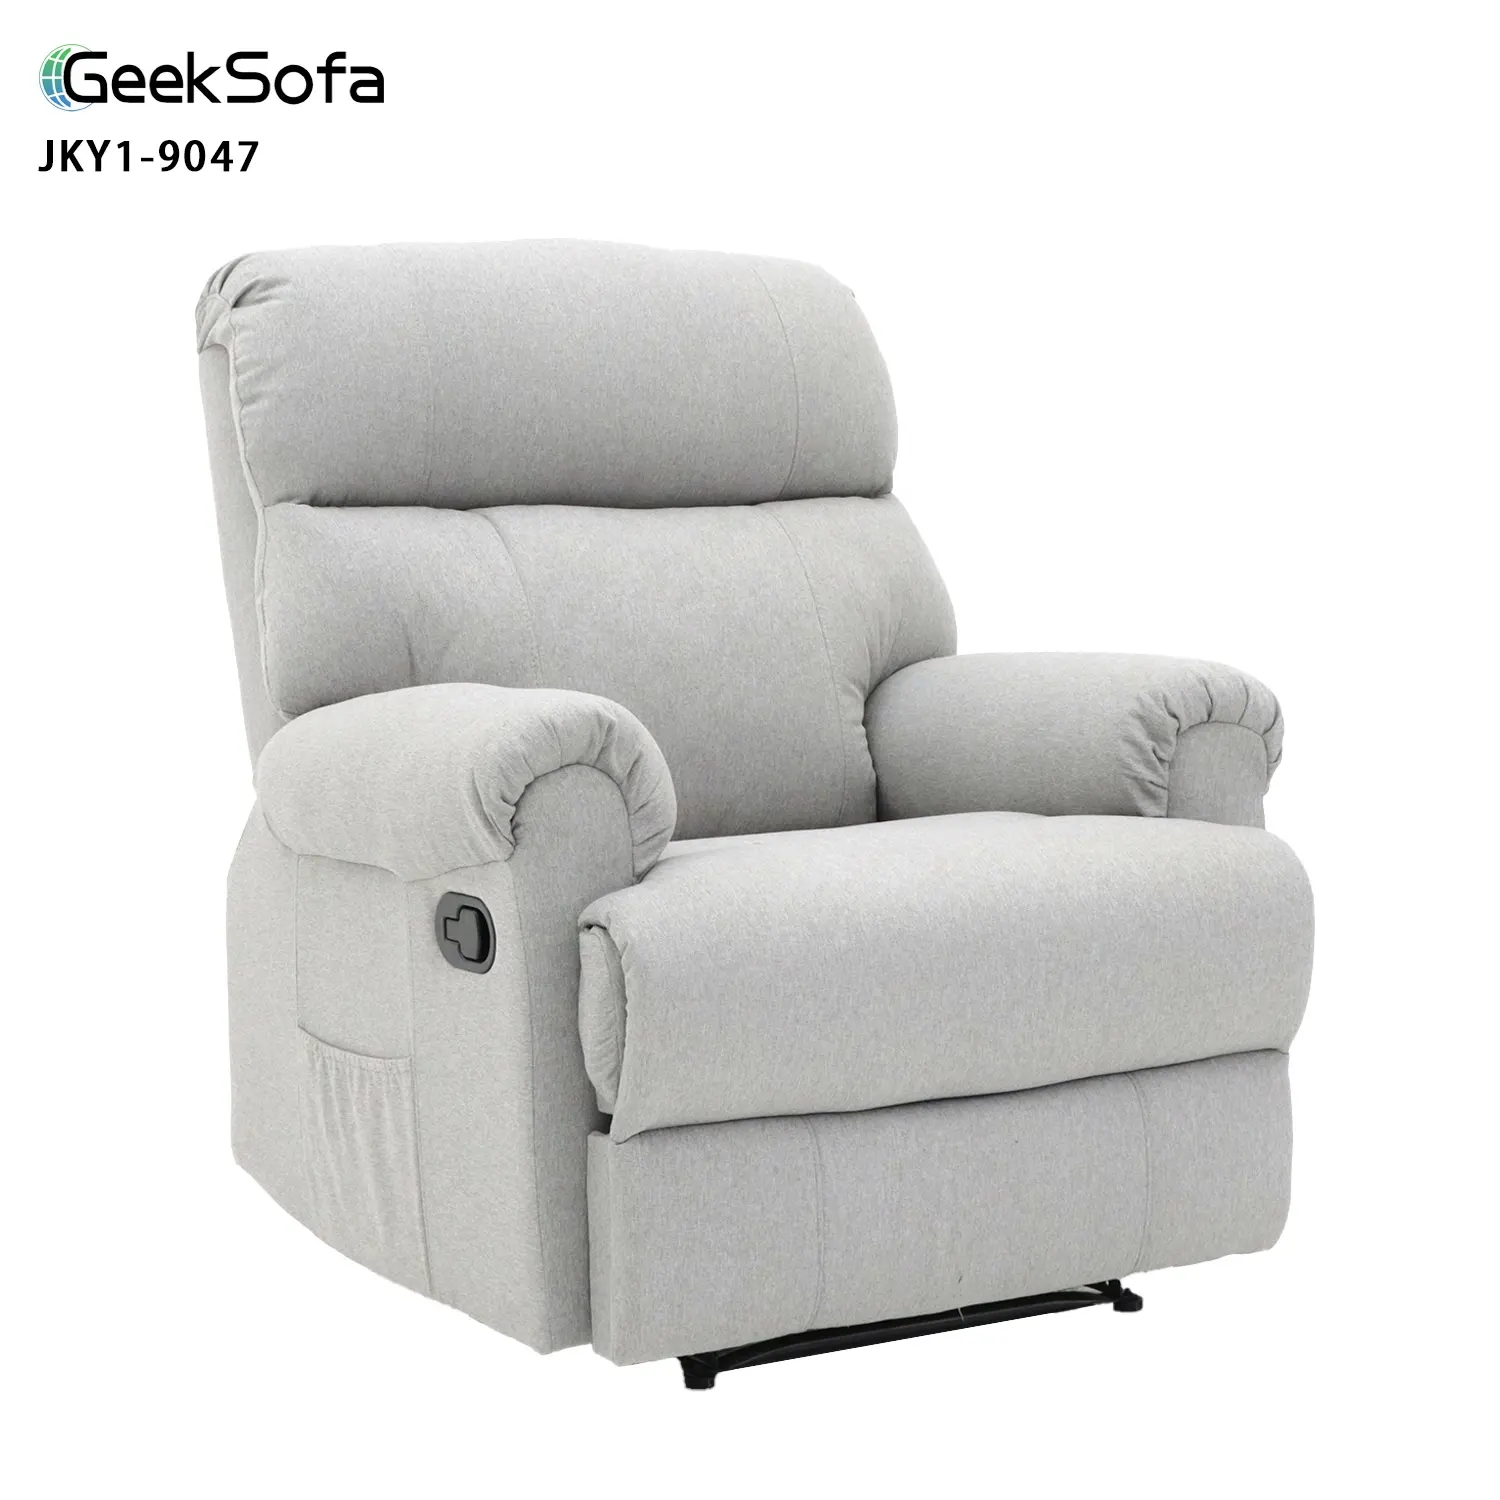 Geeksofa fabbrica all'ingrosso pigro ragazzo moderno tessuto di lino sedia reclinabile manuale per soggiorno mobili